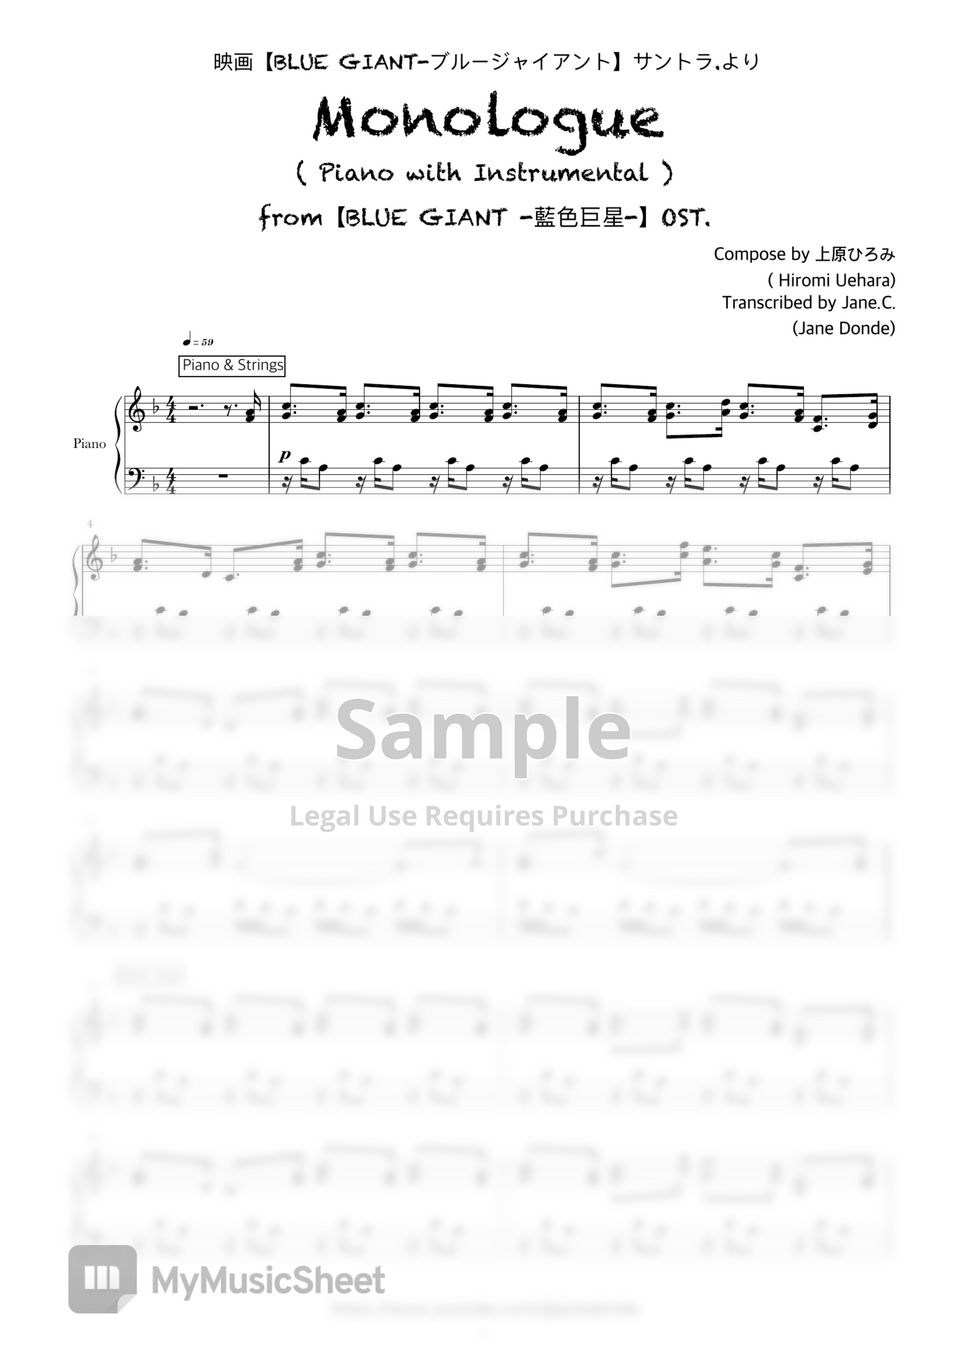 上原ひろみ(Hiromi Uehara) 《 MONOLOGUE 》 (映画????【BLUE GIANT 】OST.) Sheets by  Donde)